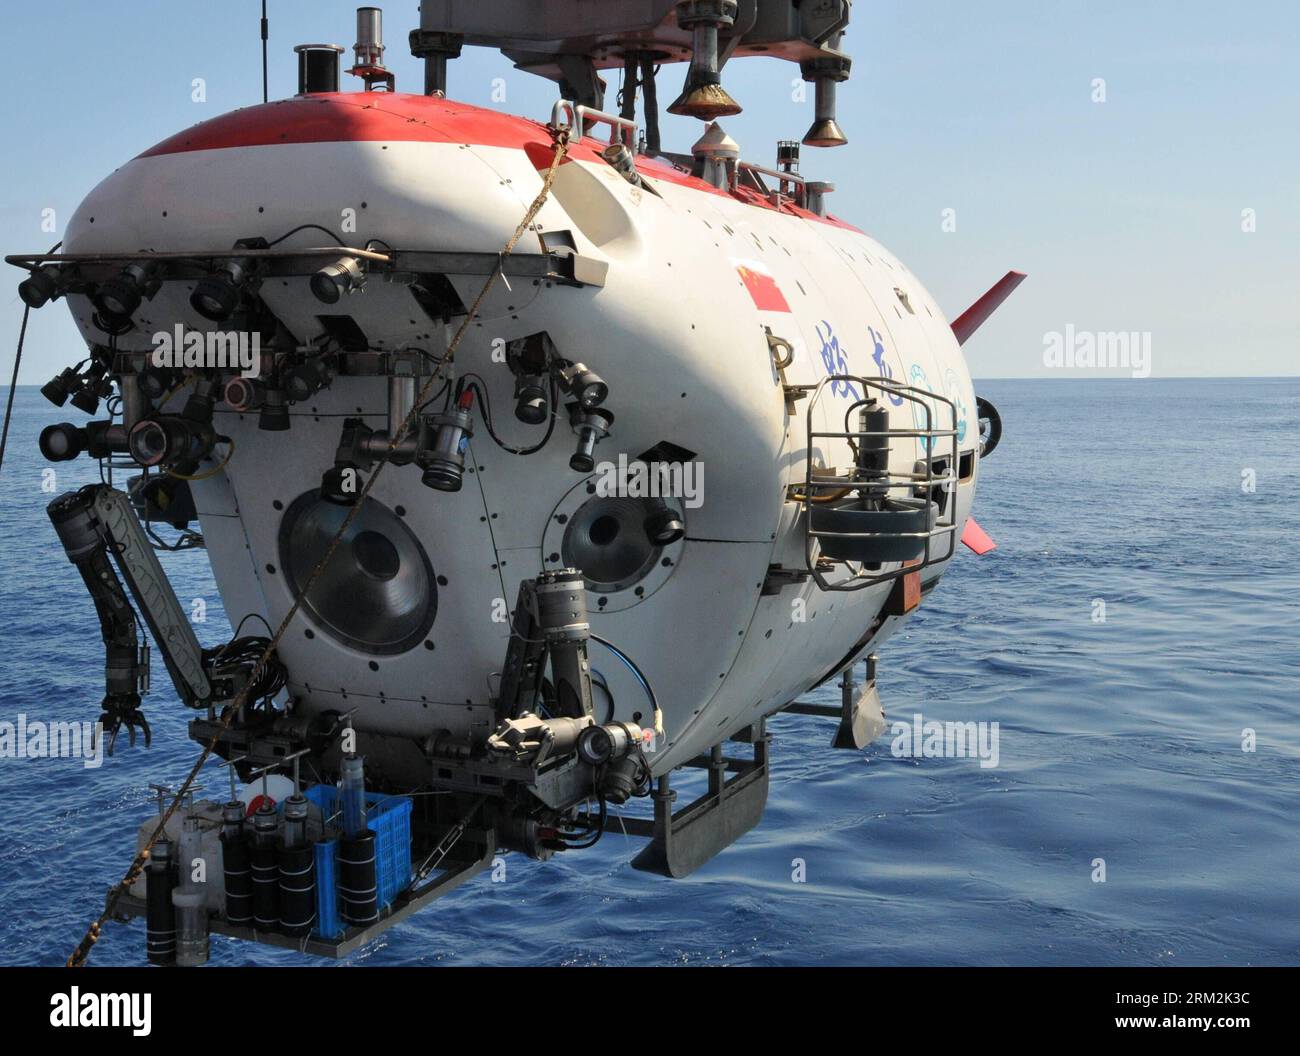 Bildnummer: 59855548  Datum: 19.06.2013  Copyright: imago/Xinhua China s manned deep-sea submersible Jiaolong prepares to dive into the South China Sea, June 19, 2013.     (Xinhua/Zhang Xudong) (zwx) CHINA-SOUTH CHINA SEA-JIAOLONG-HONG KONG SCIENTIST-DIVING(CN) PUBLICATIONxNOTxINxCHN Wissenschaft Uboot U boot xas x2x 2013 quer premiumd o0 Wissenschaft Forschung Technik Tiefseeforschung Tauchfahrt Uboot Tauchboot     59855548 Date 19 06 2013 Copyright Imago XINHUA China S Manned Deep Sea submersible Jiaolong Prepares to Dive into The South China Sea June 19 2013 XINHUA Zhang Xudong  China South Stock Photo